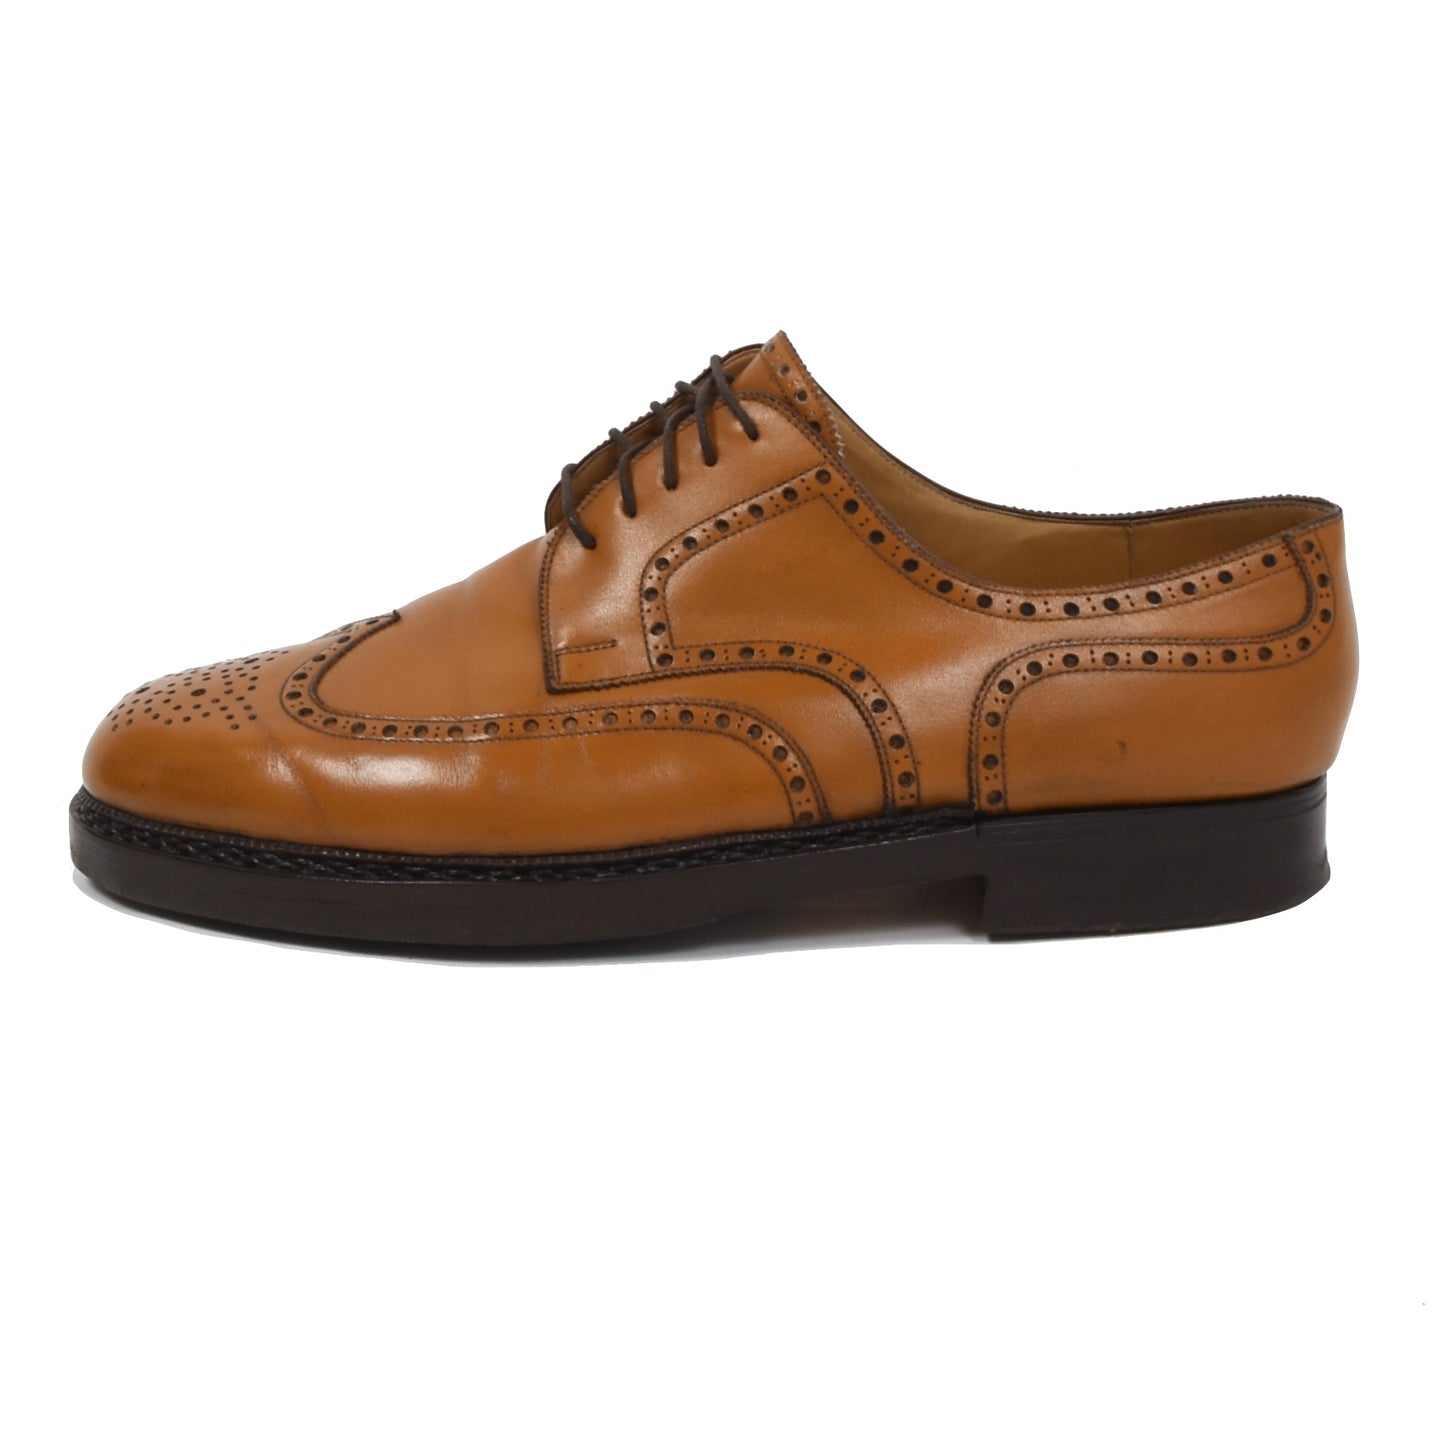 László Vass Shoes Size 43 - Cognac Tan